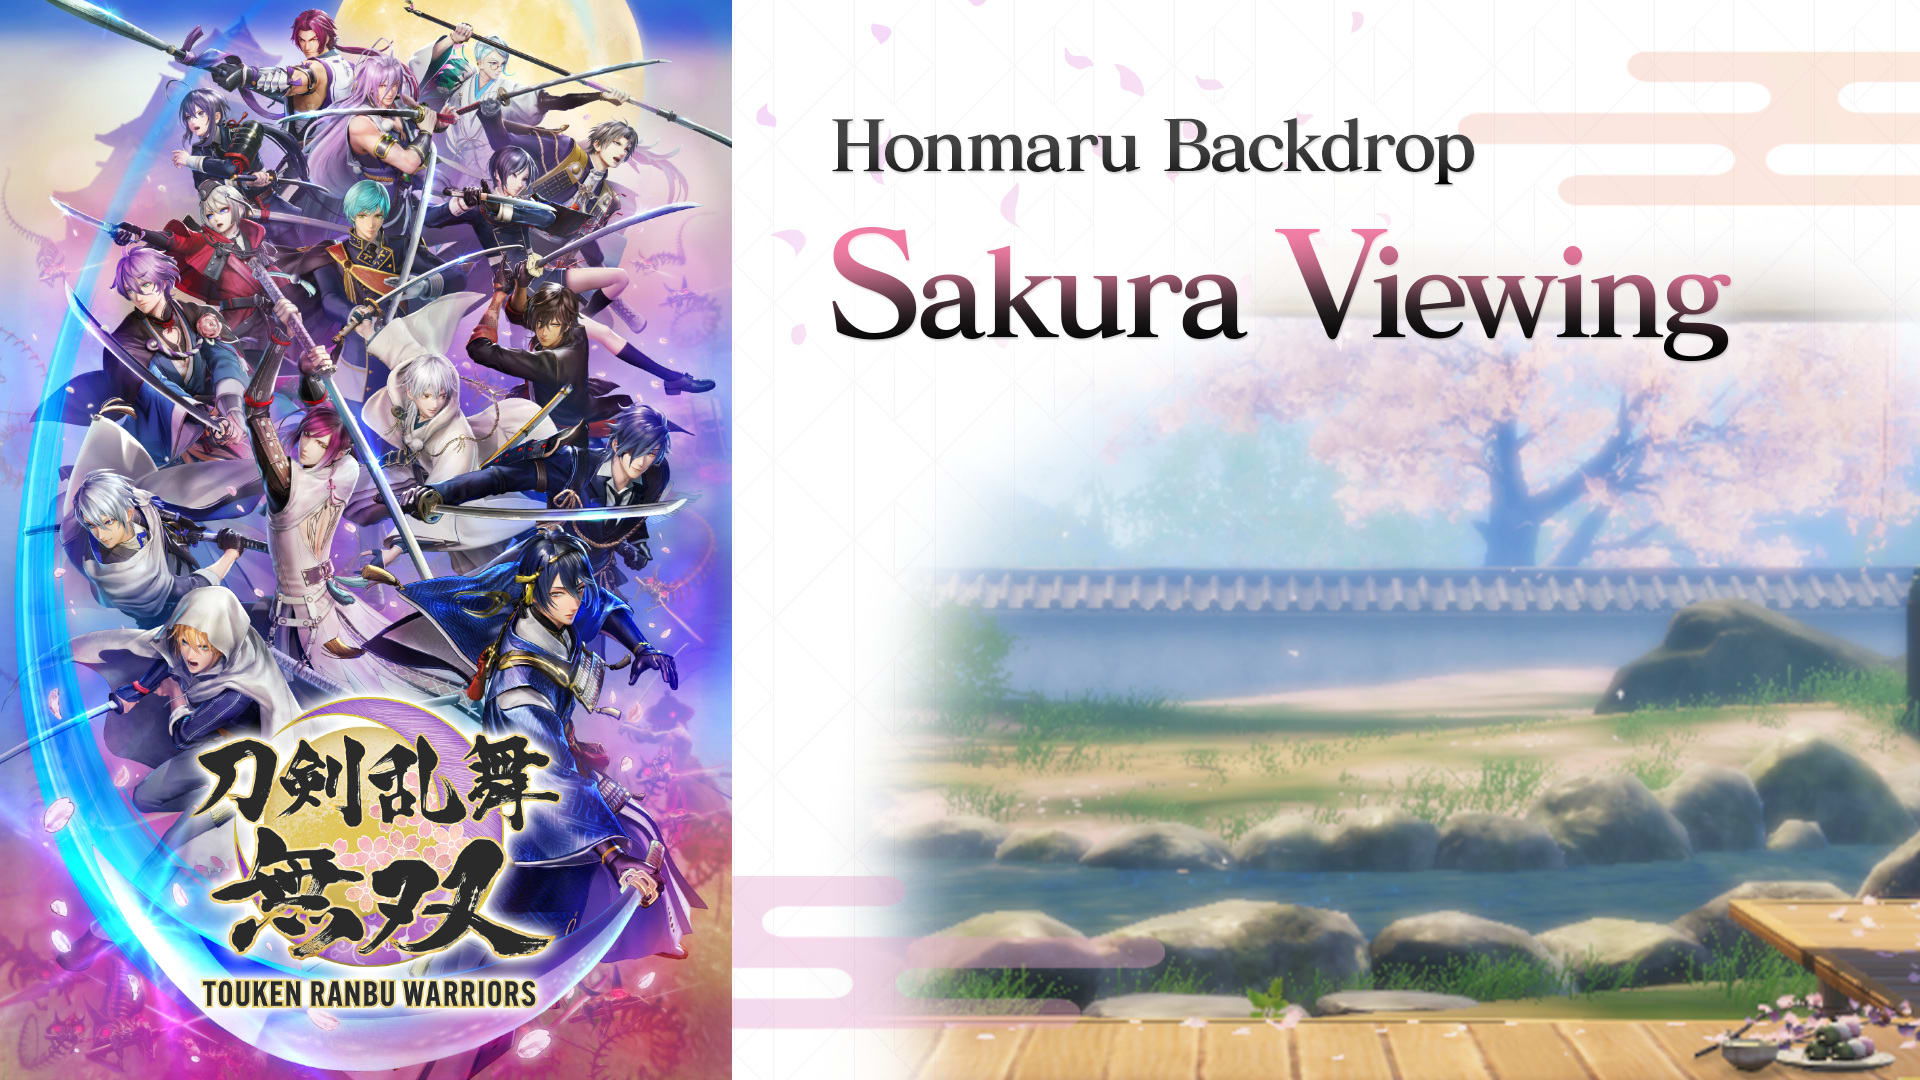 Honmaru Backdrop "Sakura Viewing"